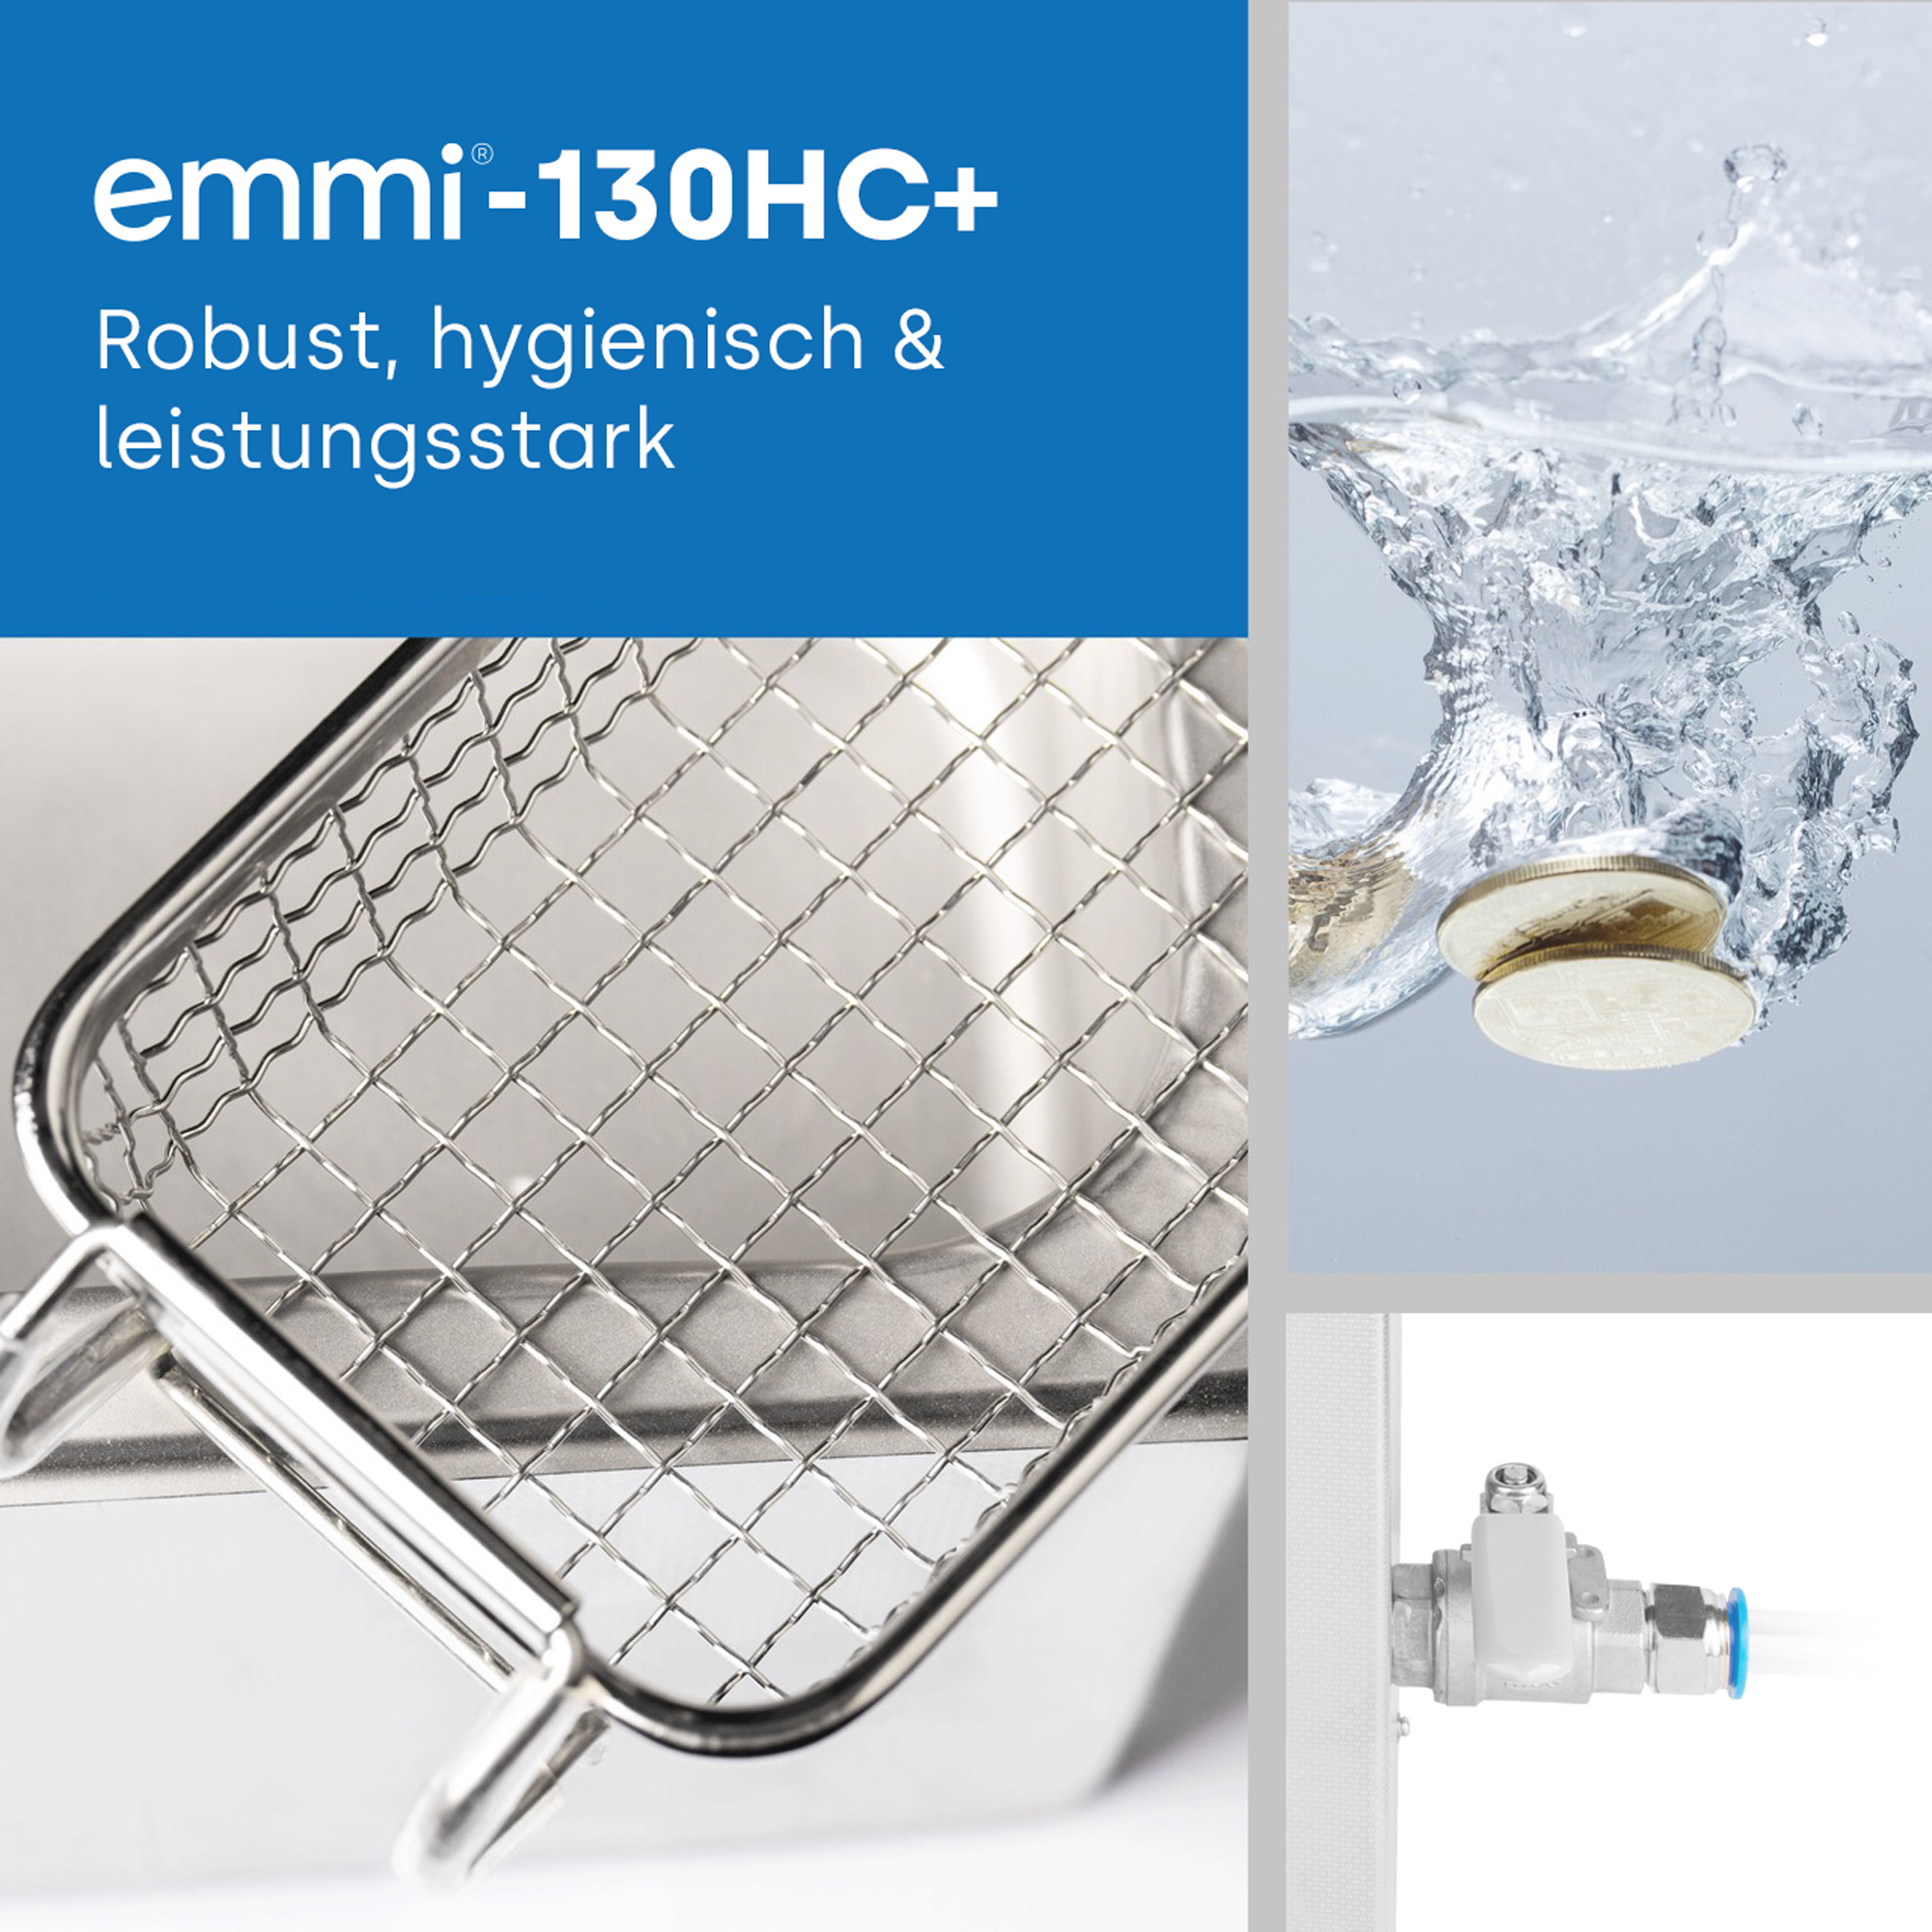 Appareil de nettoyage par ultrasons EMAG Emmi-800 HC avec robinet de vidange